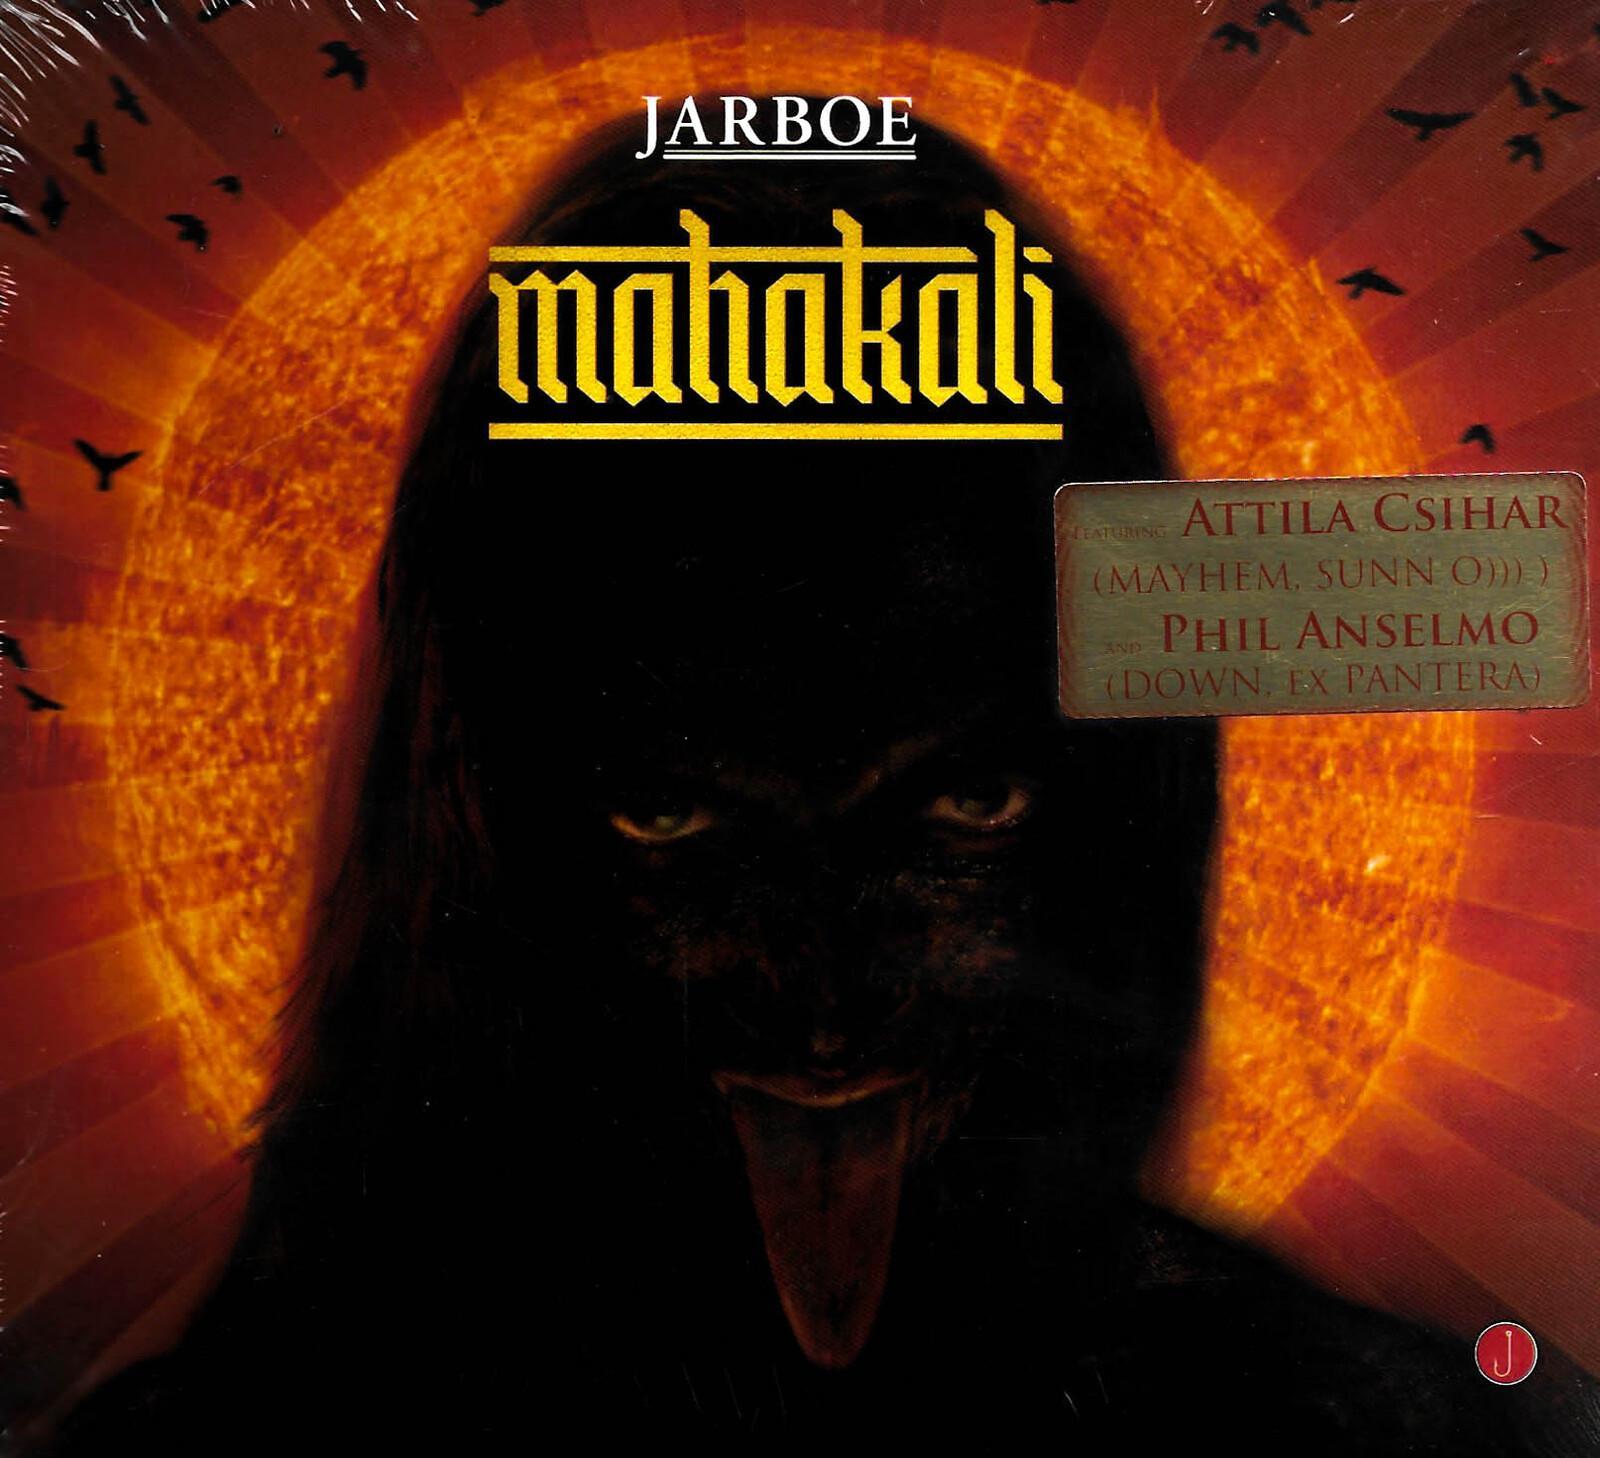 Jarboe - Mahakali CD